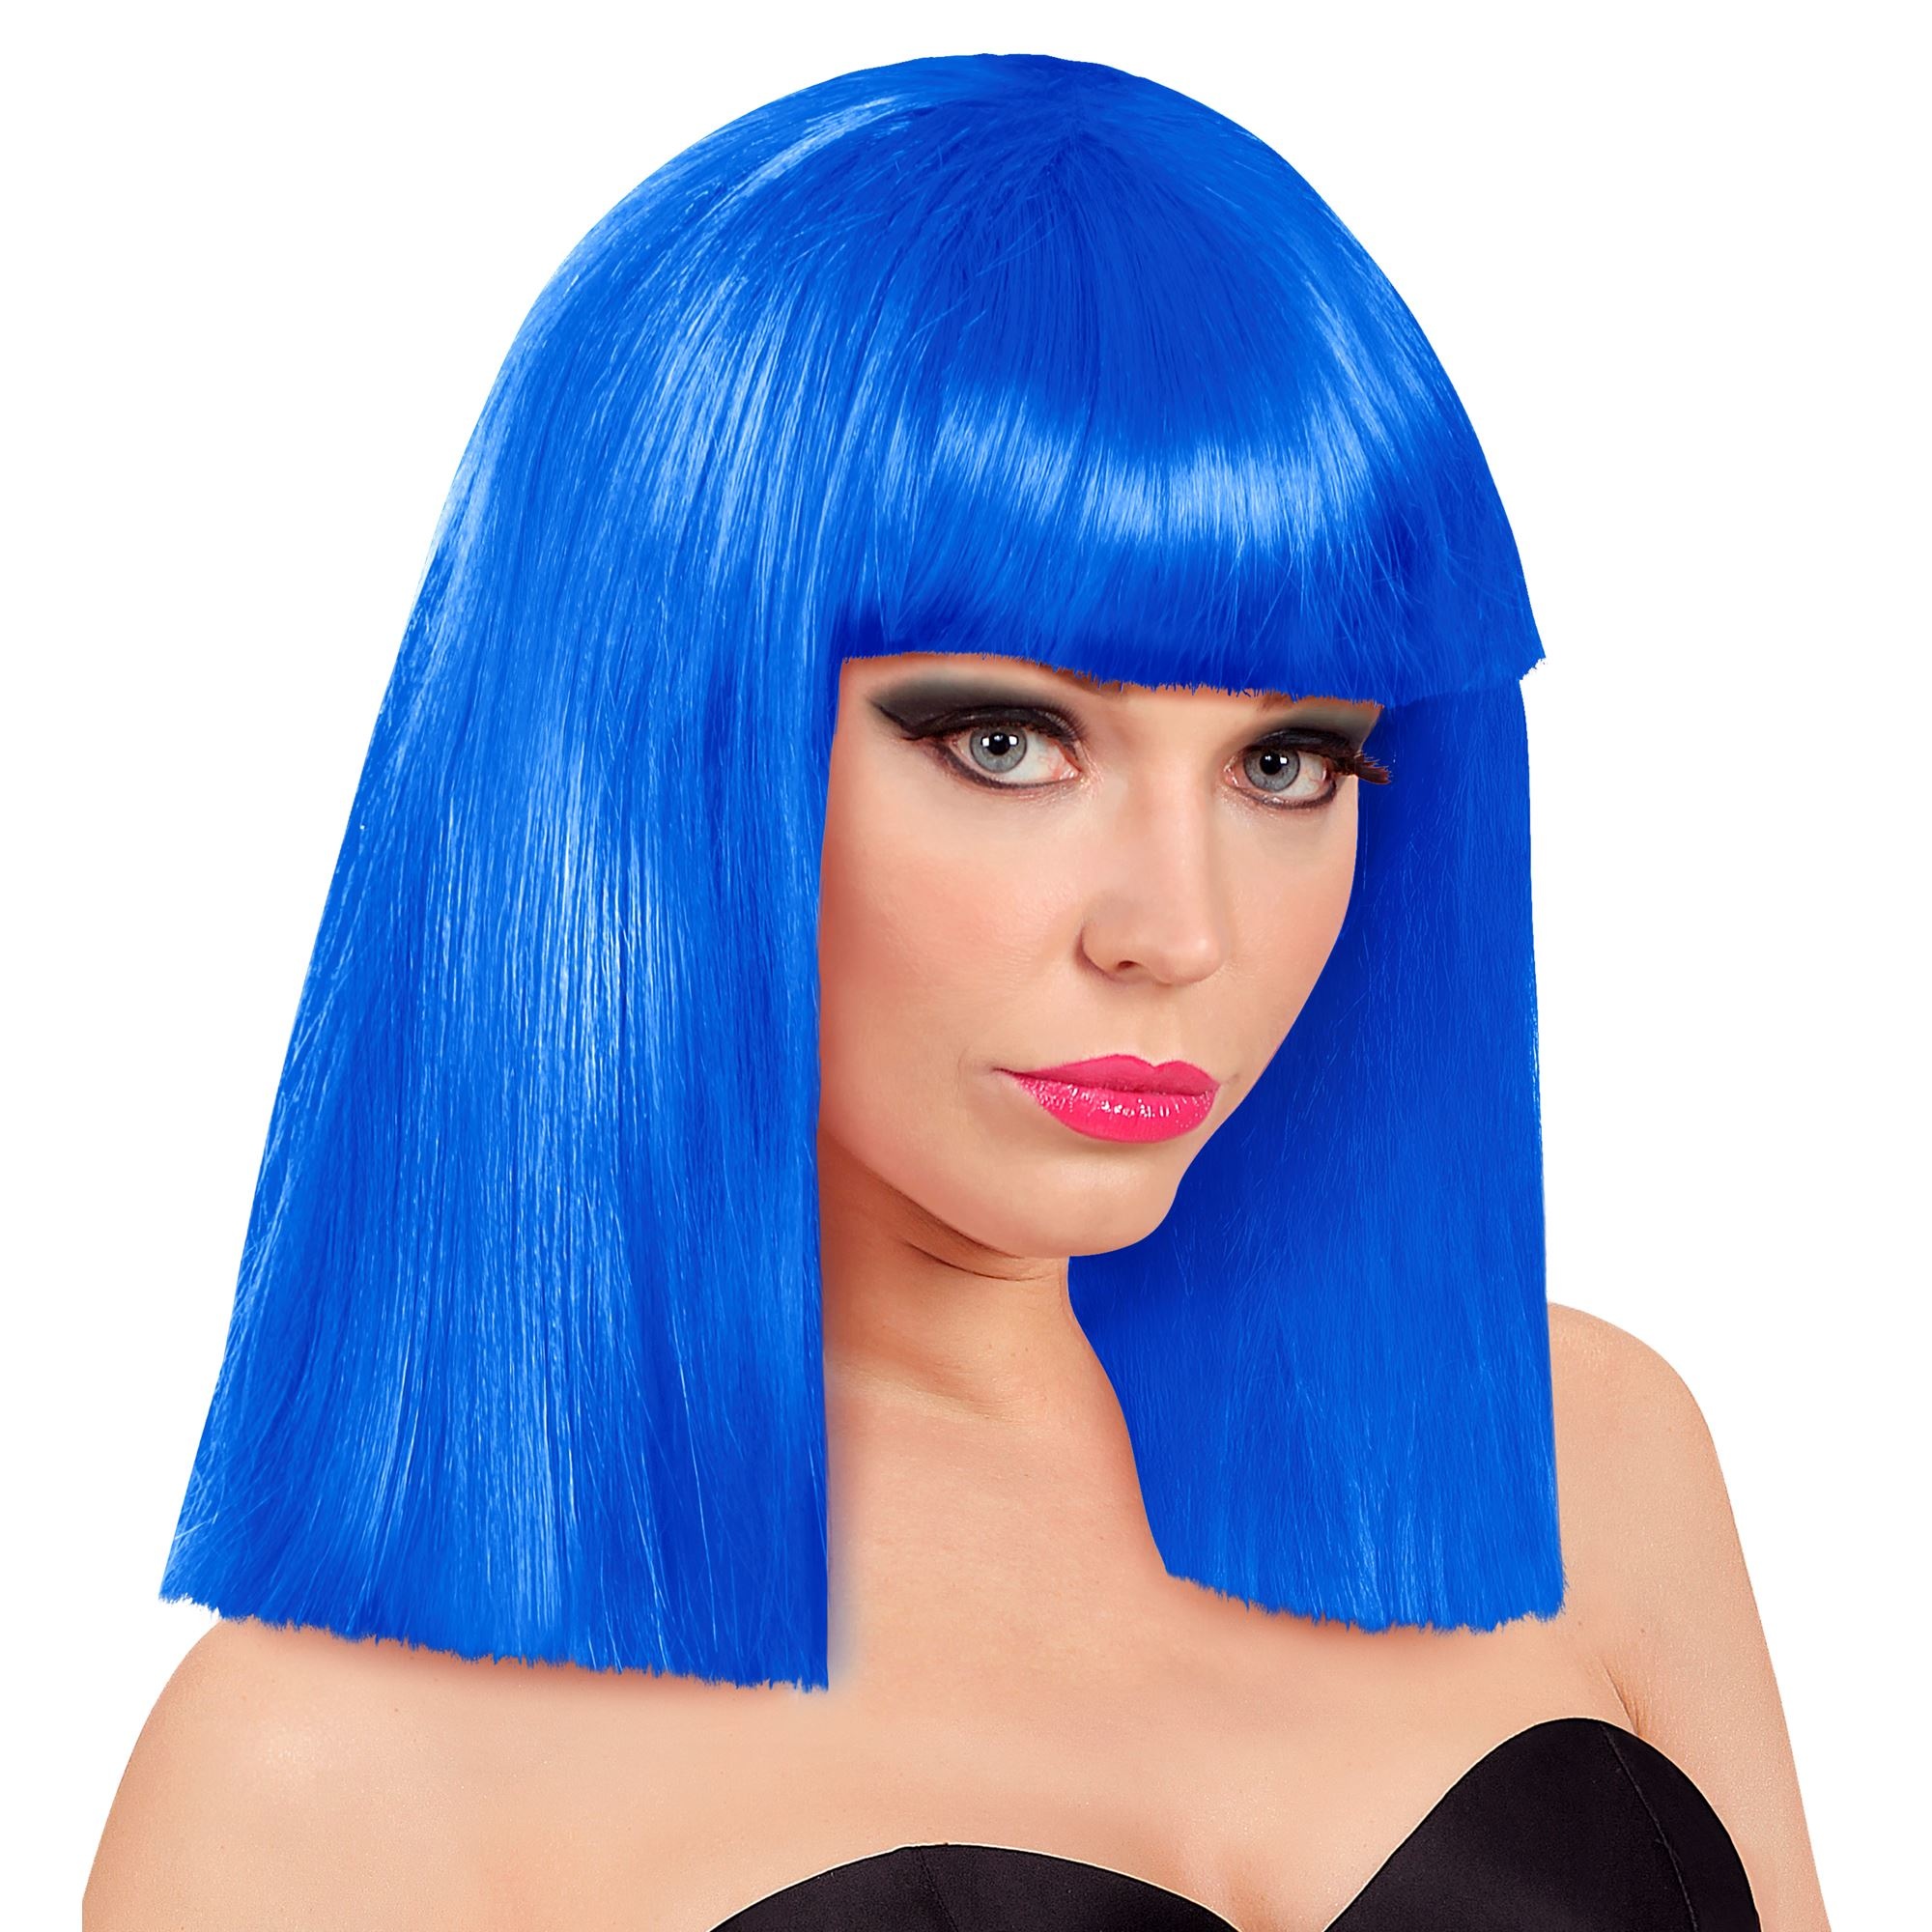 Pruik showgirl in een mooie blauwe kleur